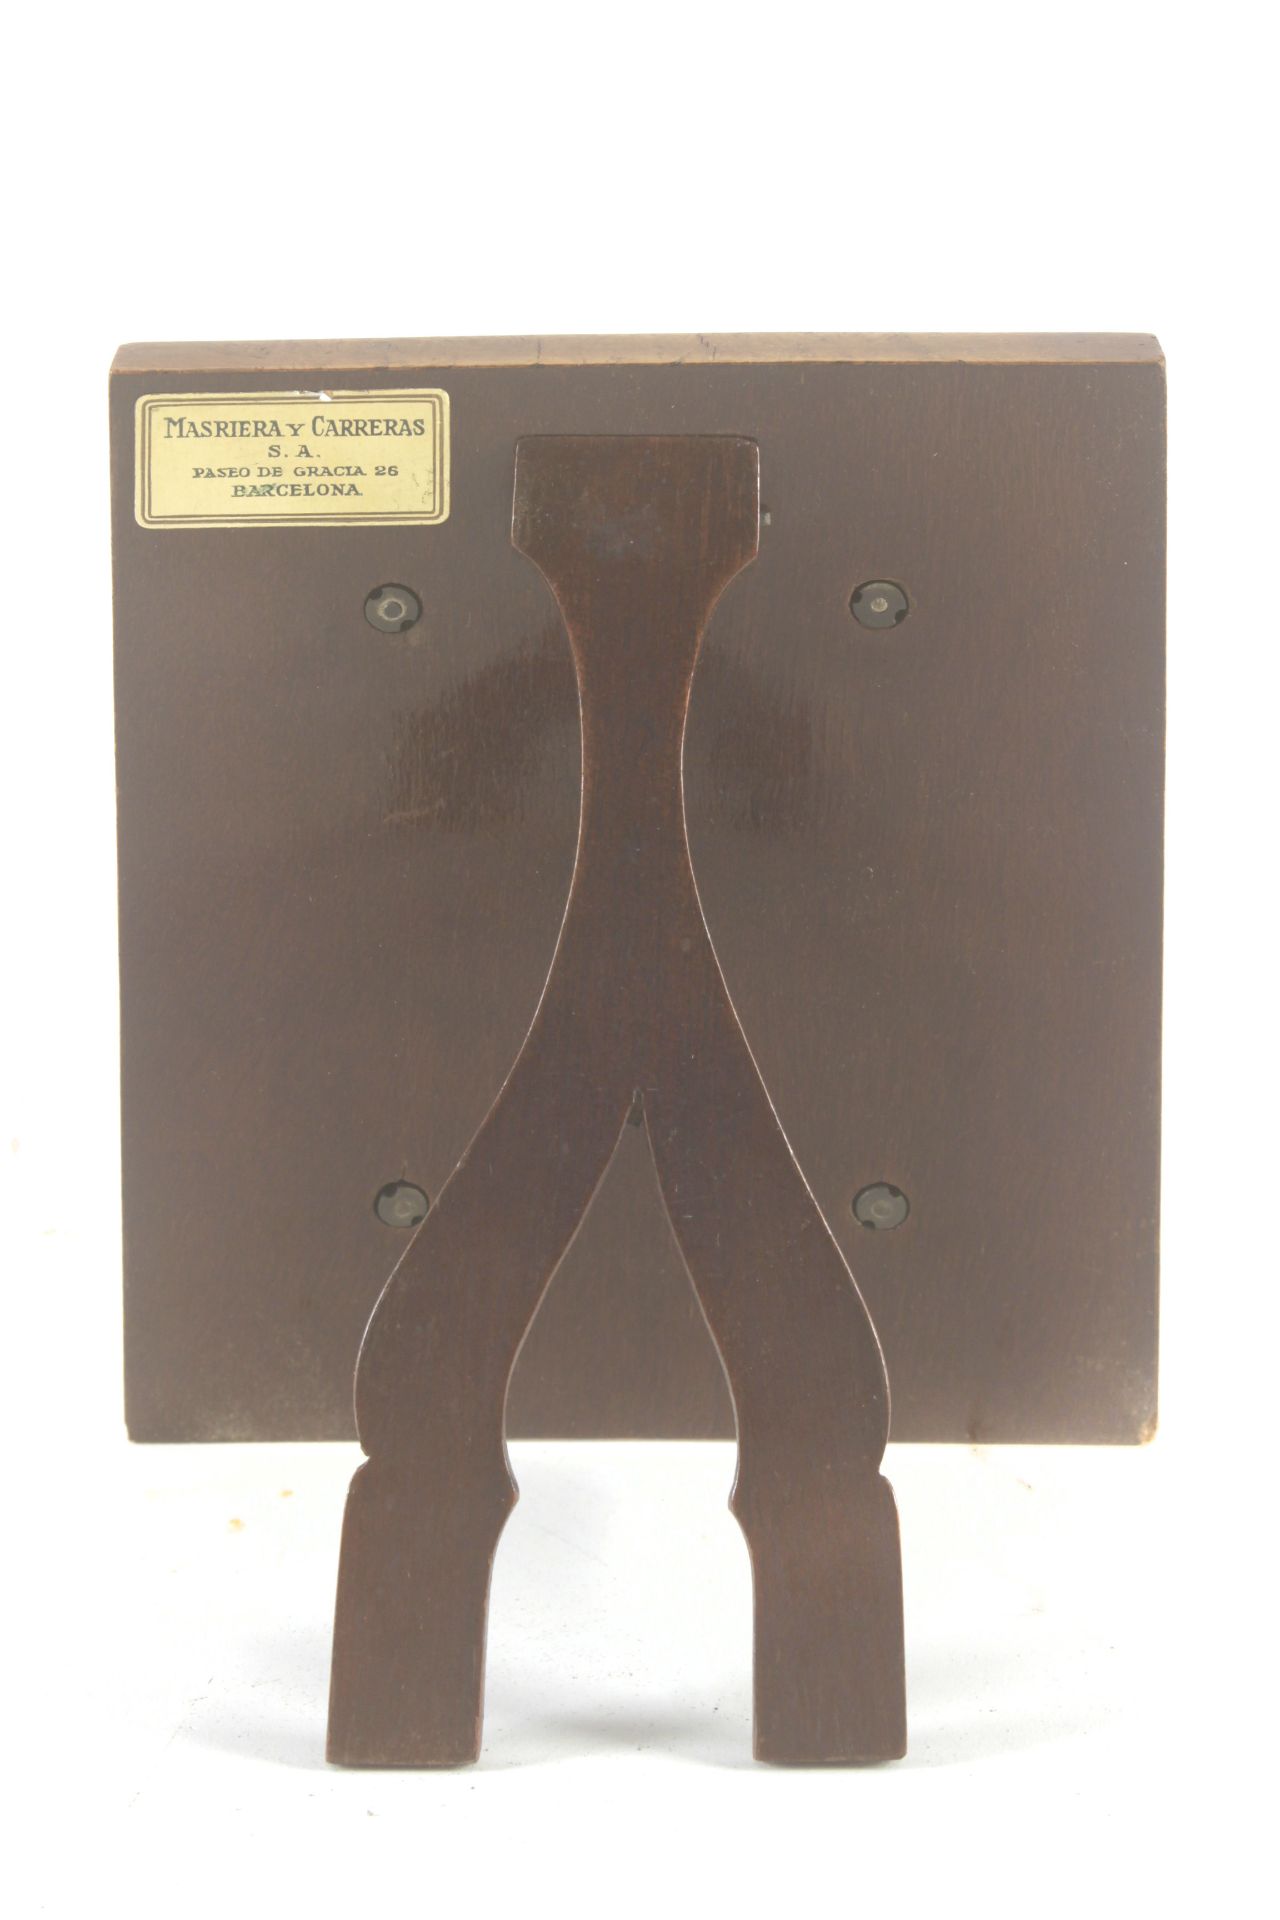 Masriera y Carreras. A devotional enamel plaque - Image 3 of 3